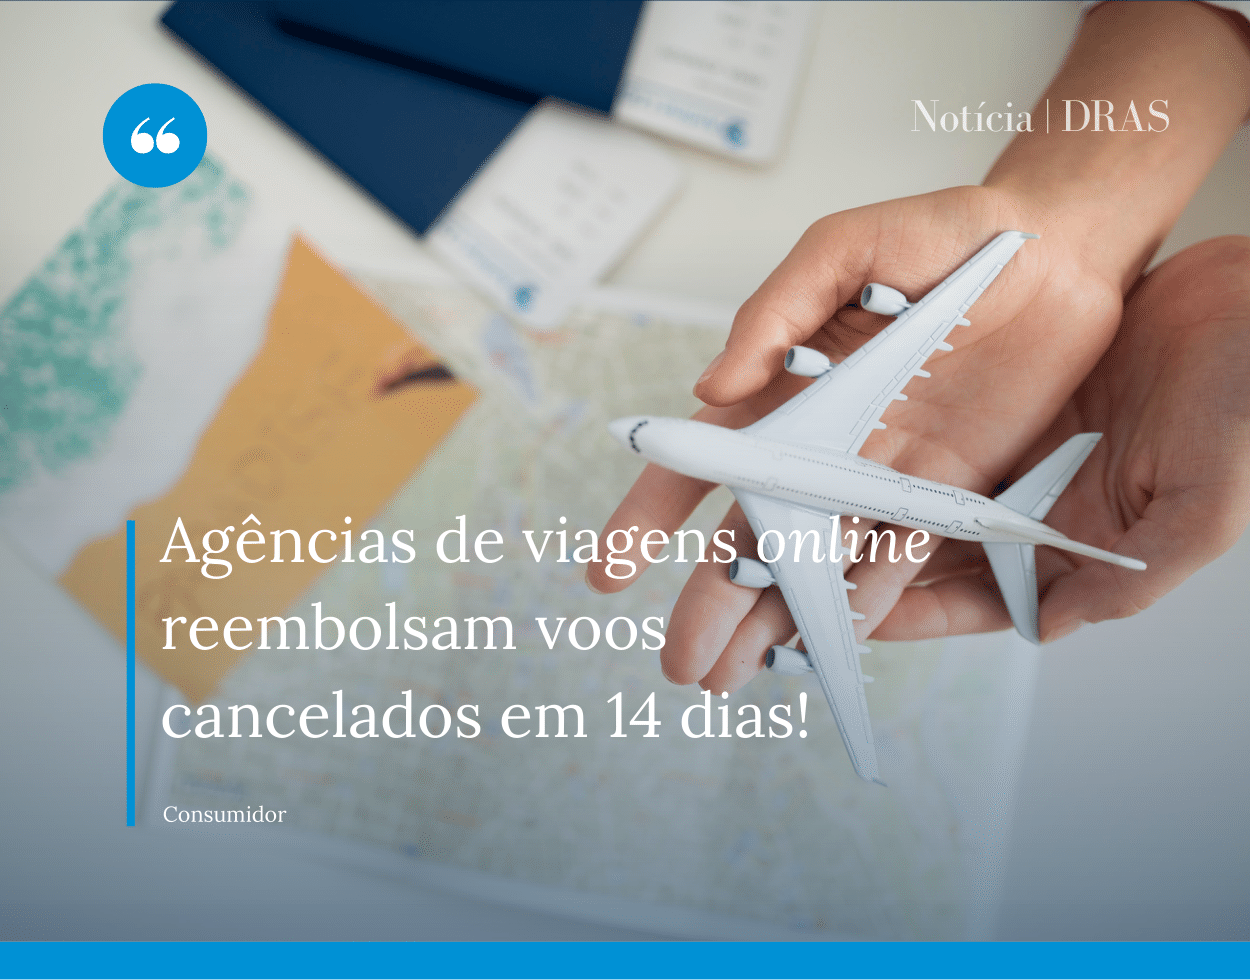 Agências de viagens online reembolsam voos cancelados em 14 dias!